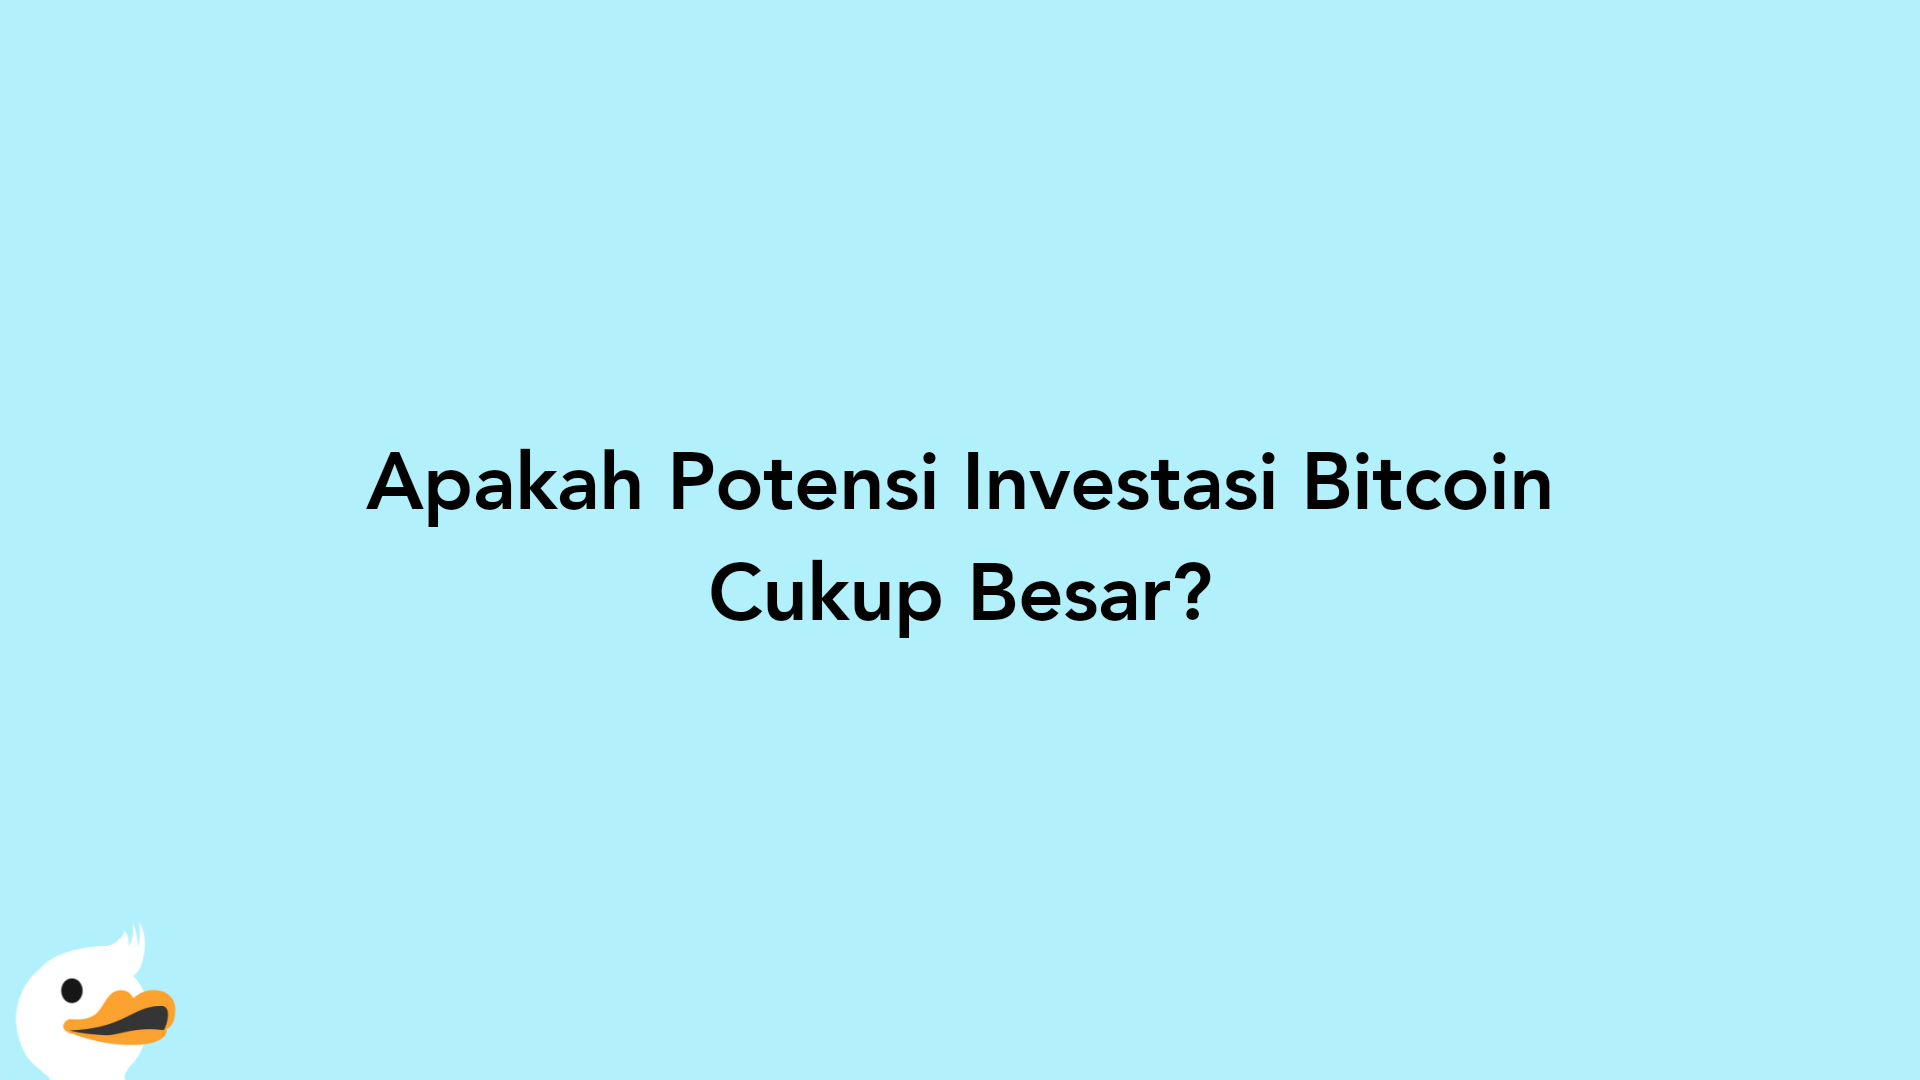 Apakah Potensi Investasi Bitcoin Cukup Besar?